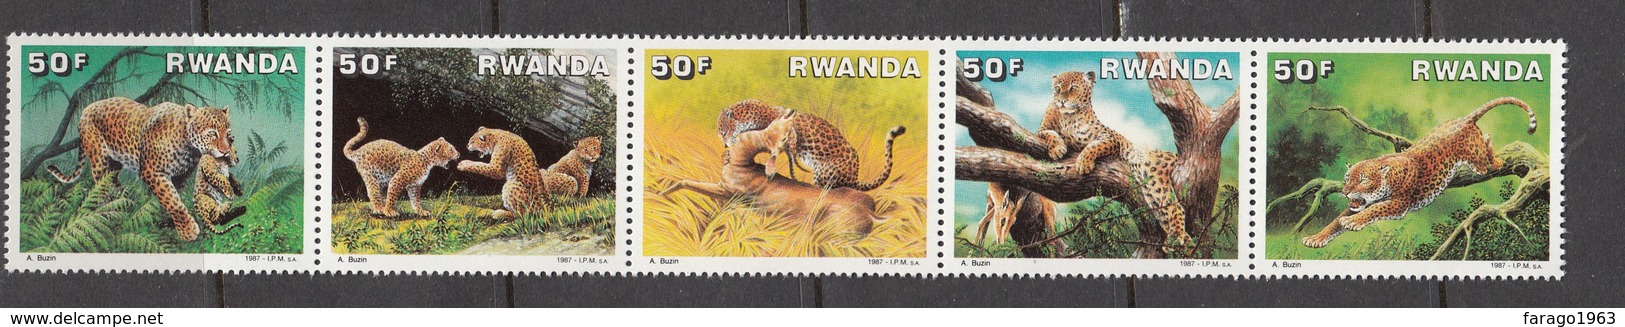 1987 Rwanda Rwandaise  Leopards  Complete Strip/set Of 5 MNH. - Neufs